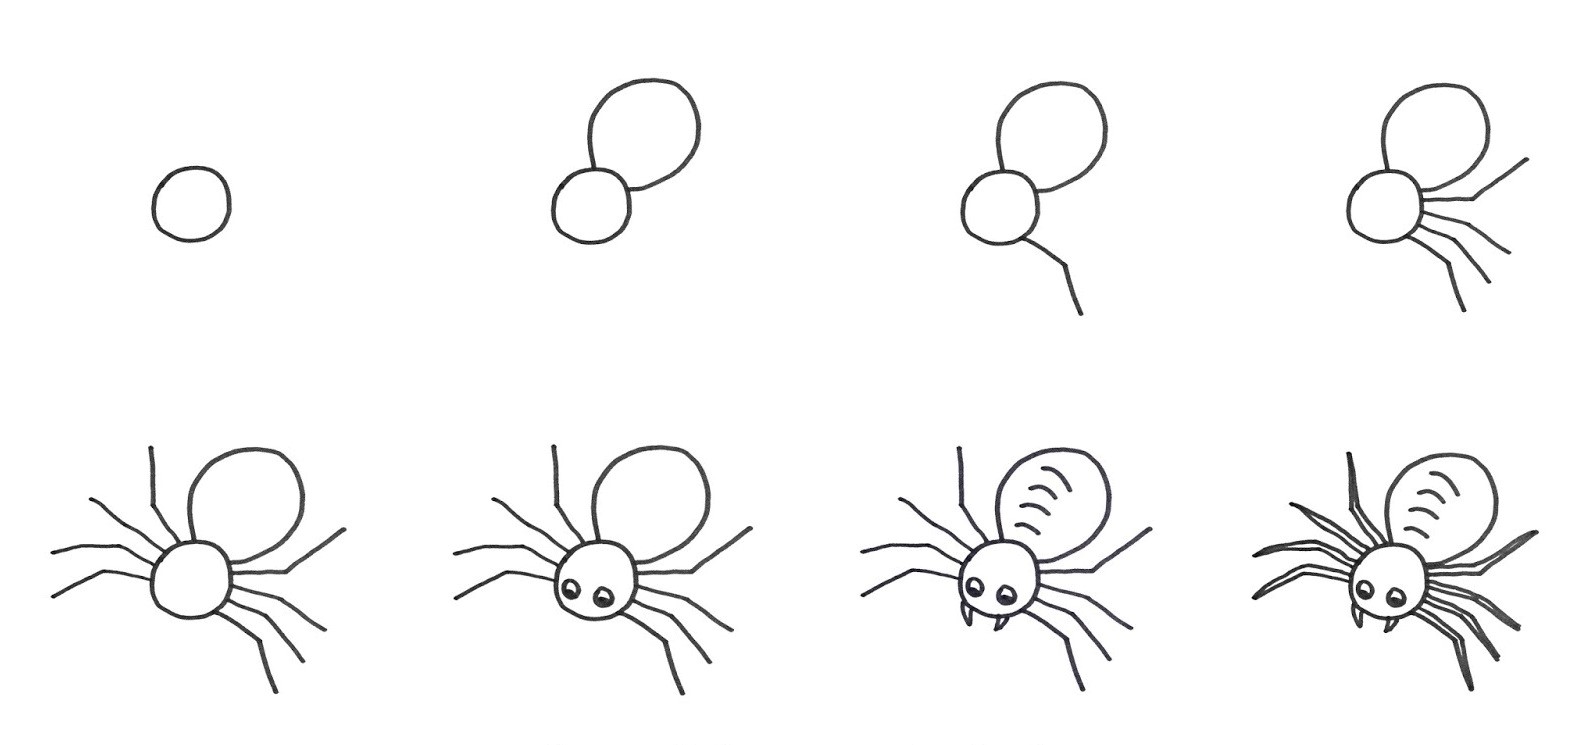 Örümcek fikri 7 çizimi